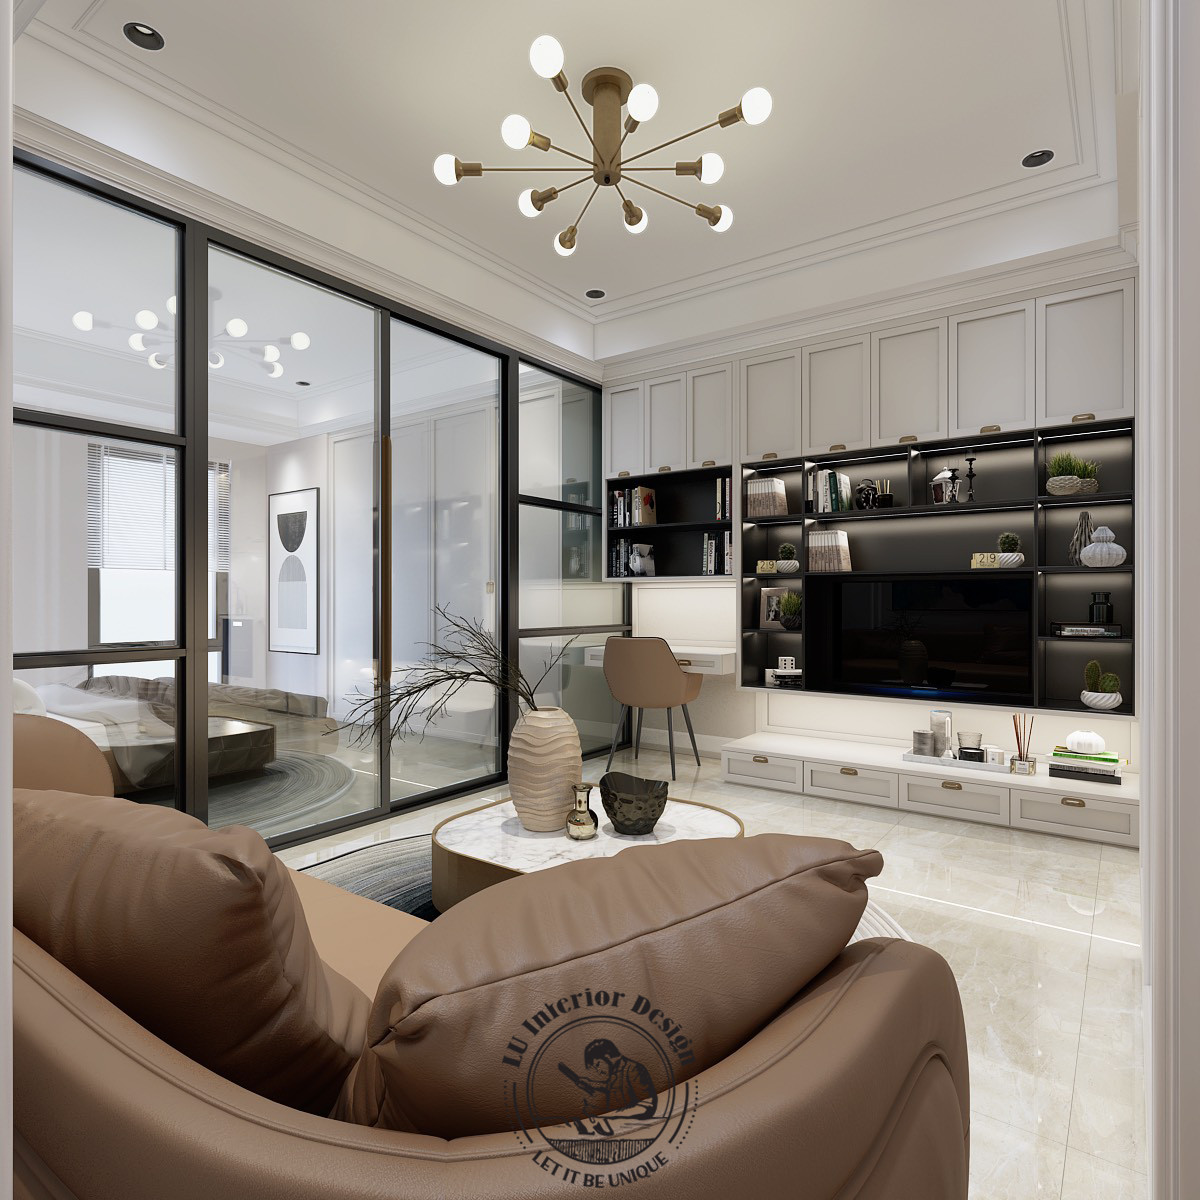 Thiết kế kệ tivi kết hợp tủ trang trí cho phòng khách hiện đại | LU Design thực hiện.